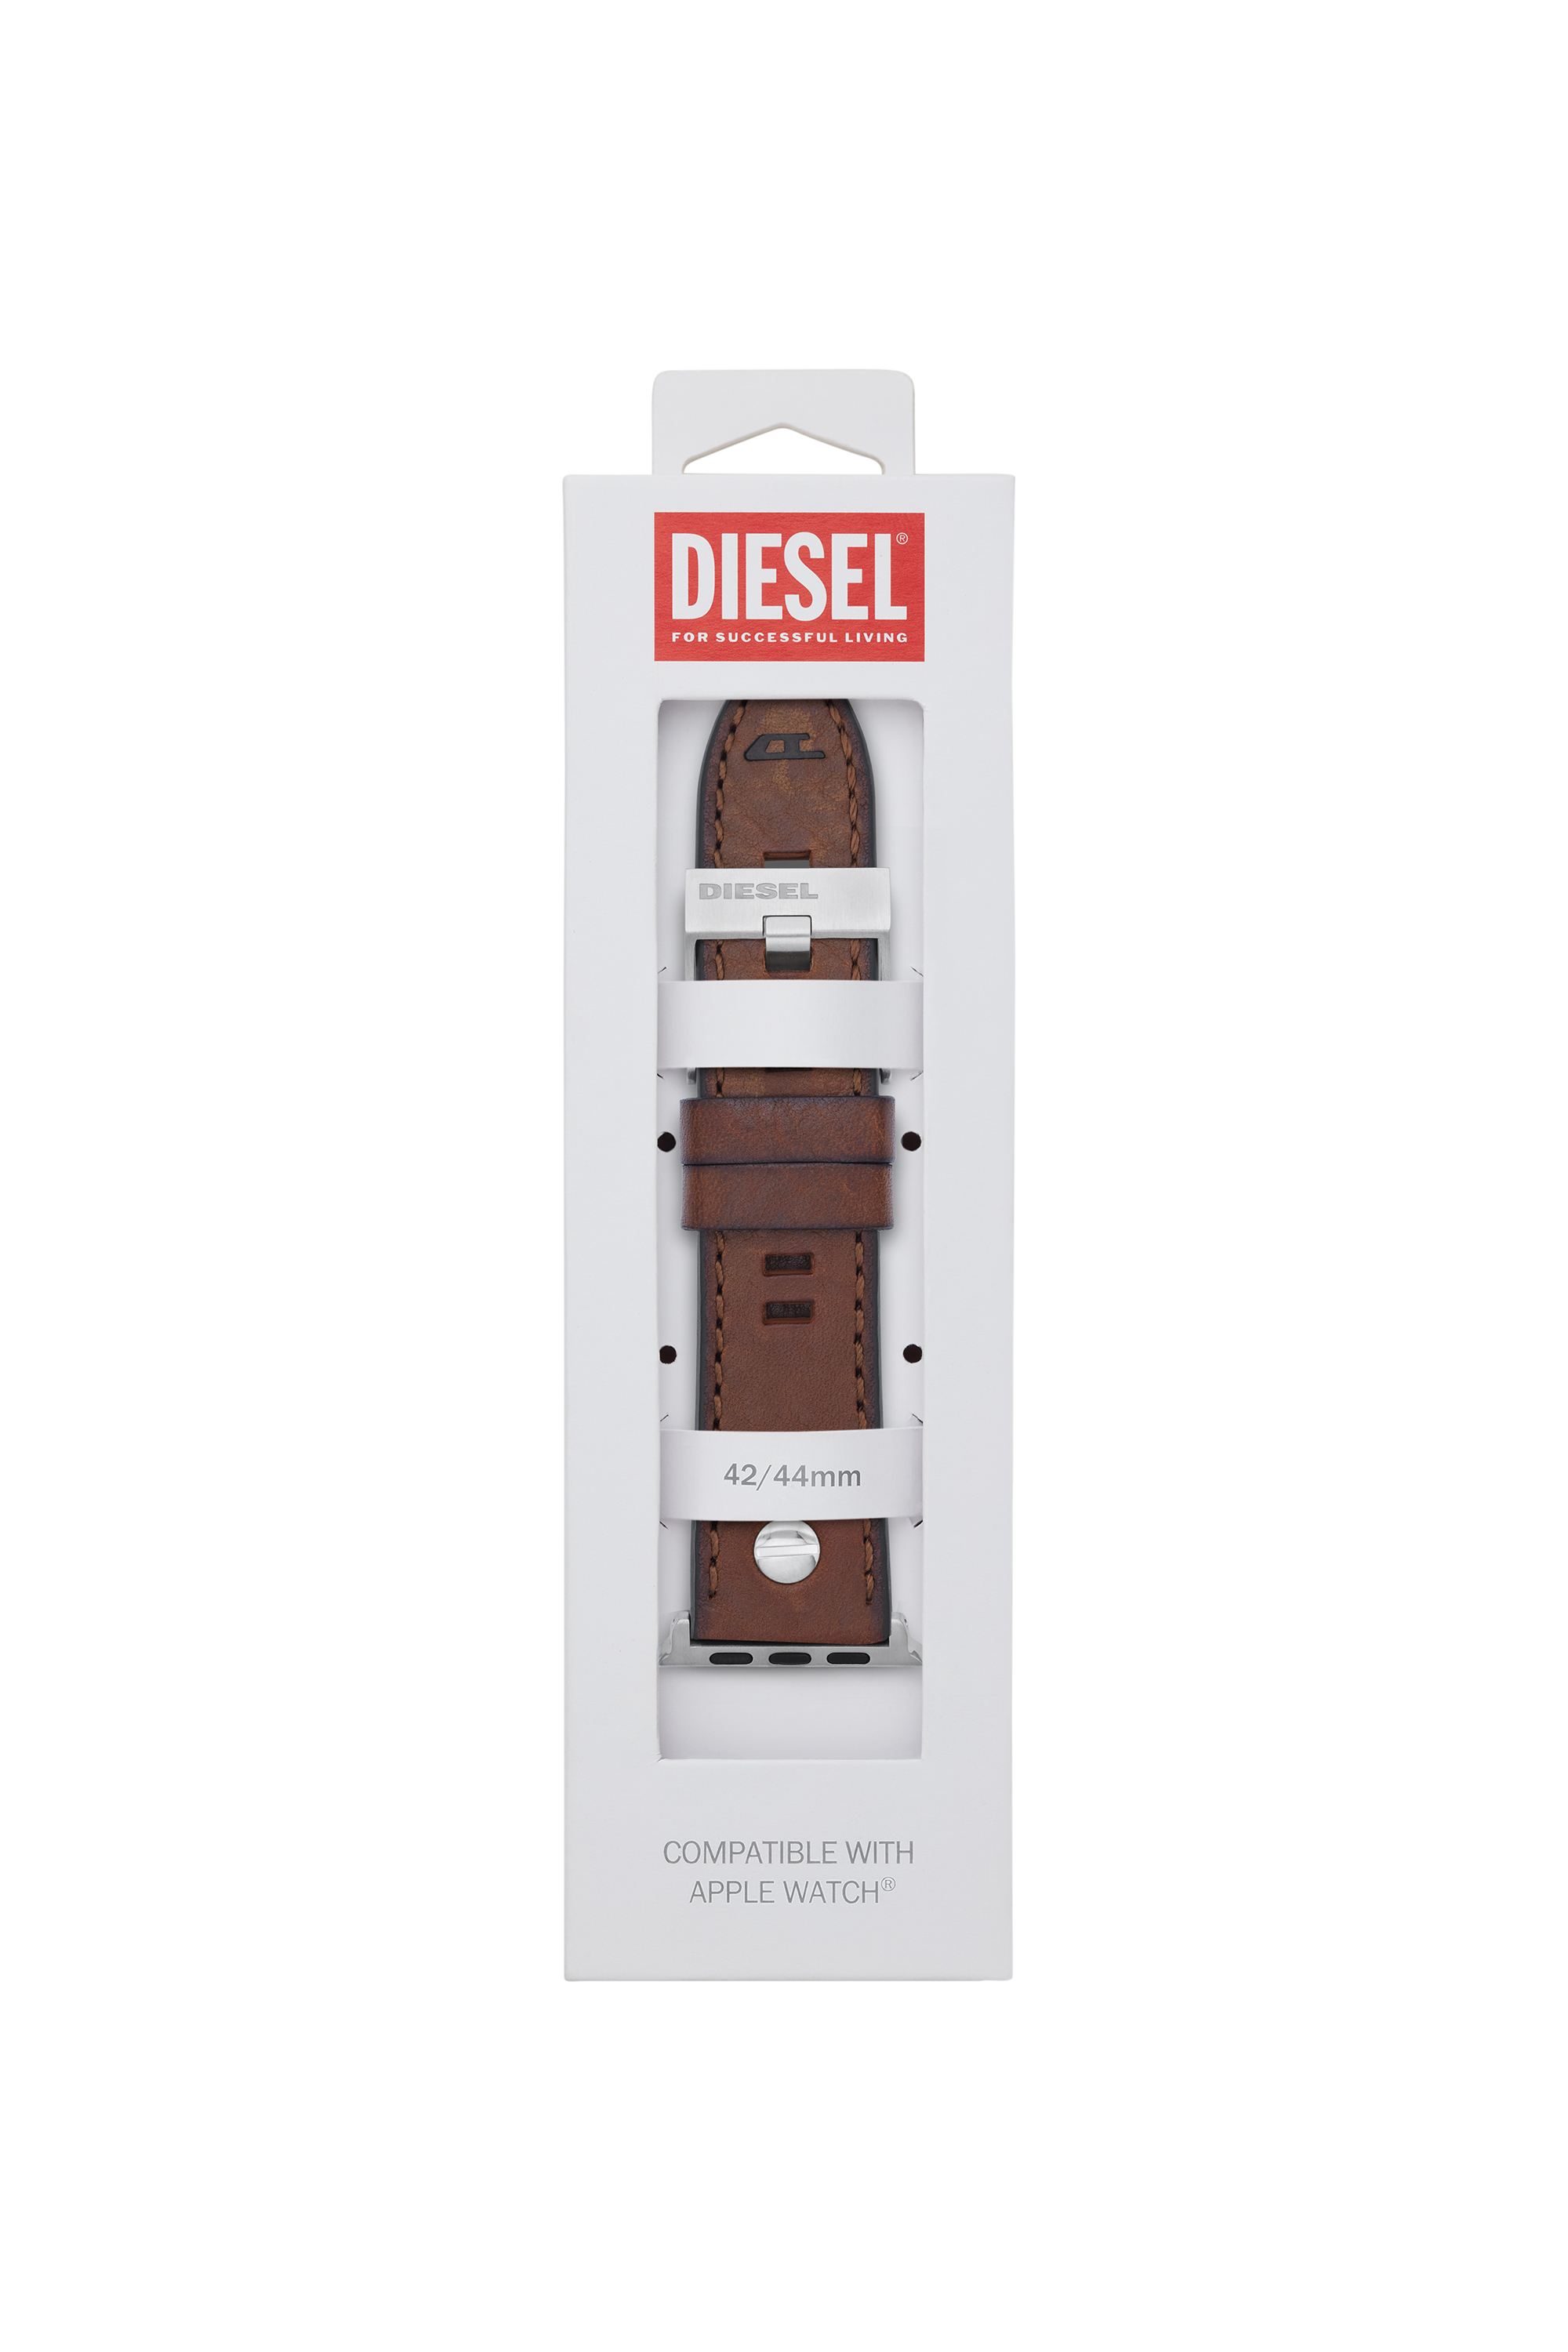 Diesel - DSS002, ブラウン - Image 2